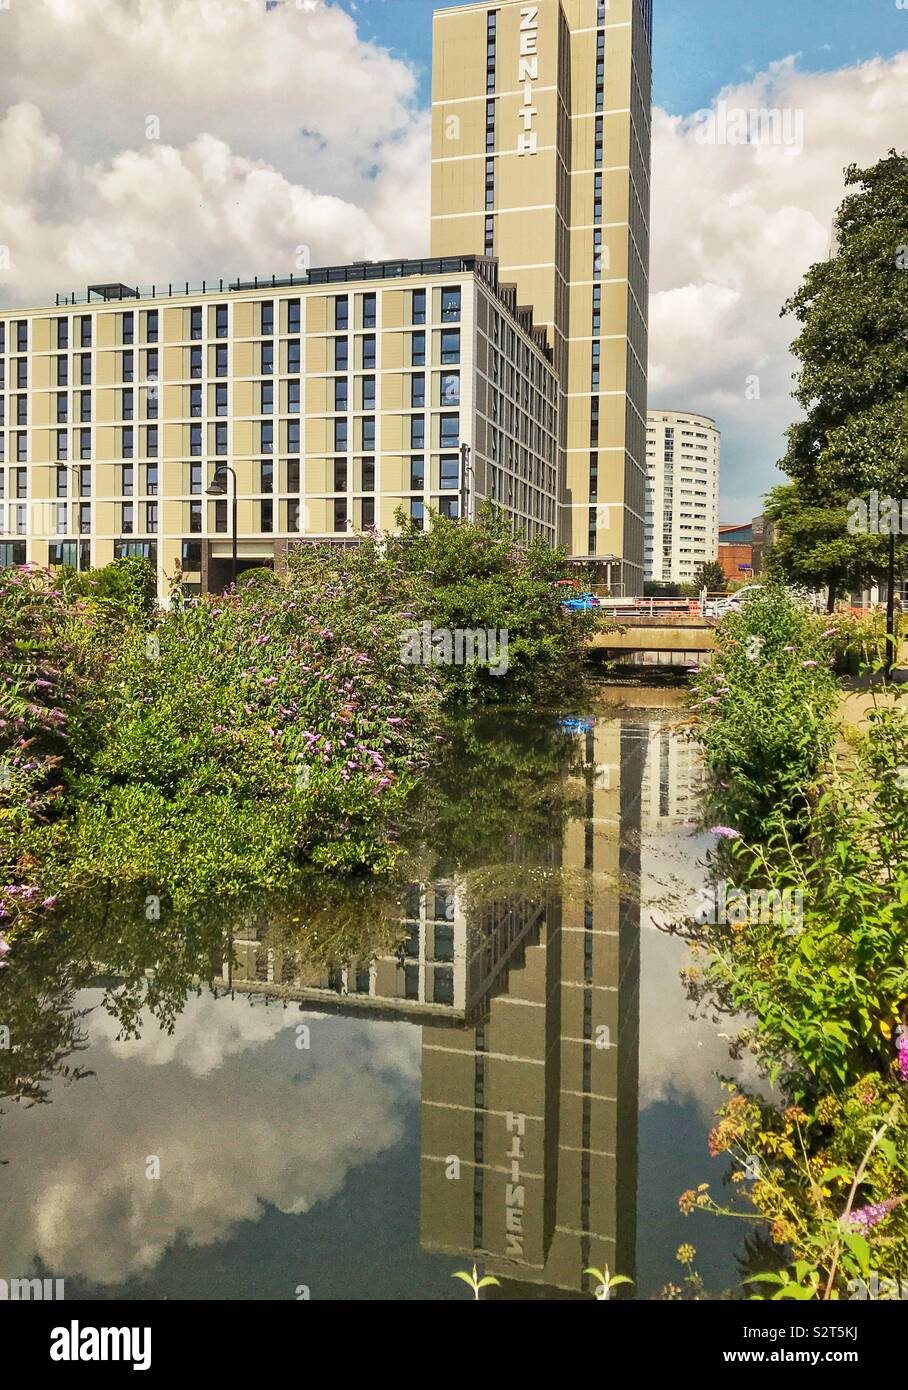 De nouveaux logements étudiants dans le centre-ville de Cardiff avec reflet dans les eaux calmes d'un canal Banque D'Images